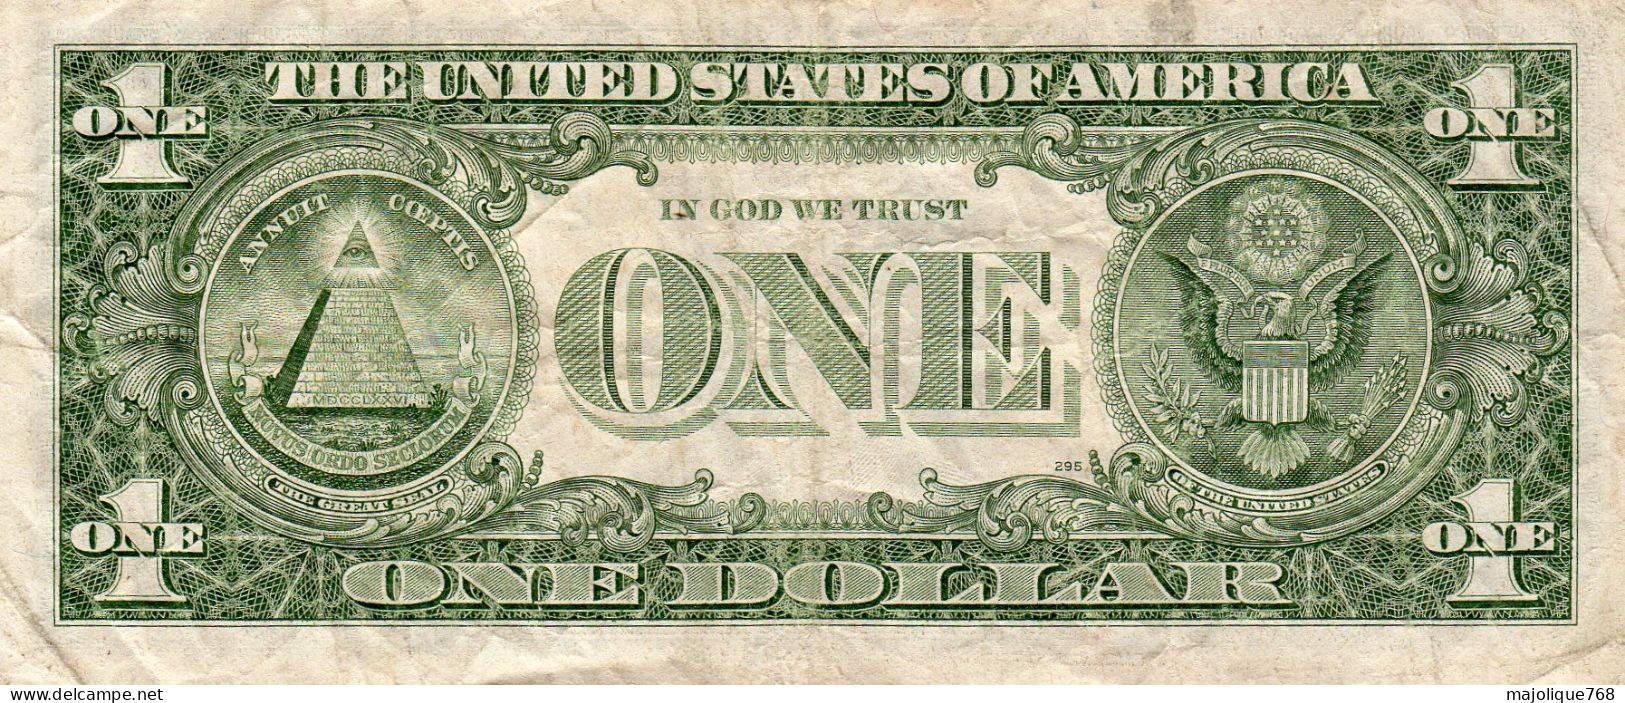 2 Billets Des Etats-Unis  Billet De 1 Dollar Année 1988 A "B  Et Dollar Année 1985 - Collections